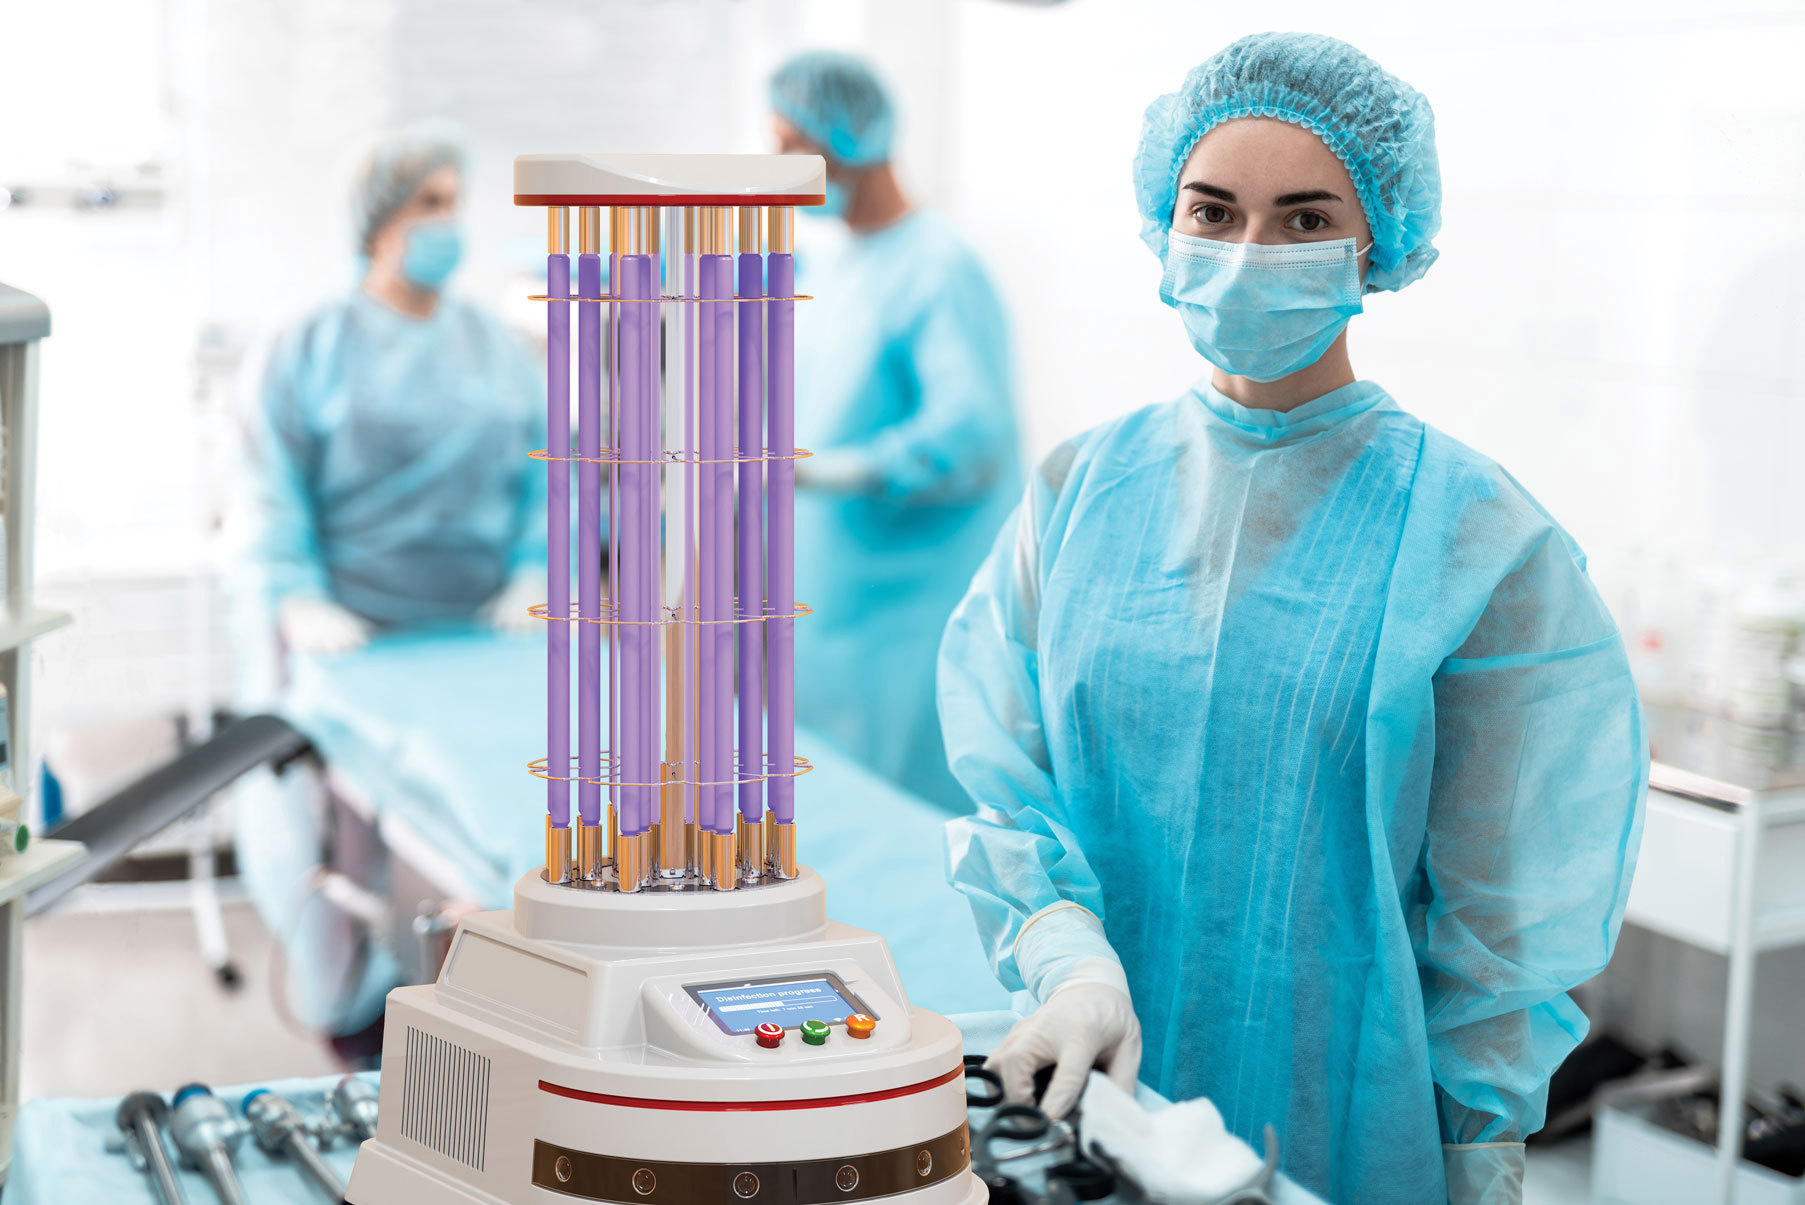 UV-Laser sind sehr hilfreich in einer Vielzahl von Anwendungen wie z. B. bei der Fluoreszenz-Mikroskopie in biomedizinischen Systemen (rechts) oder